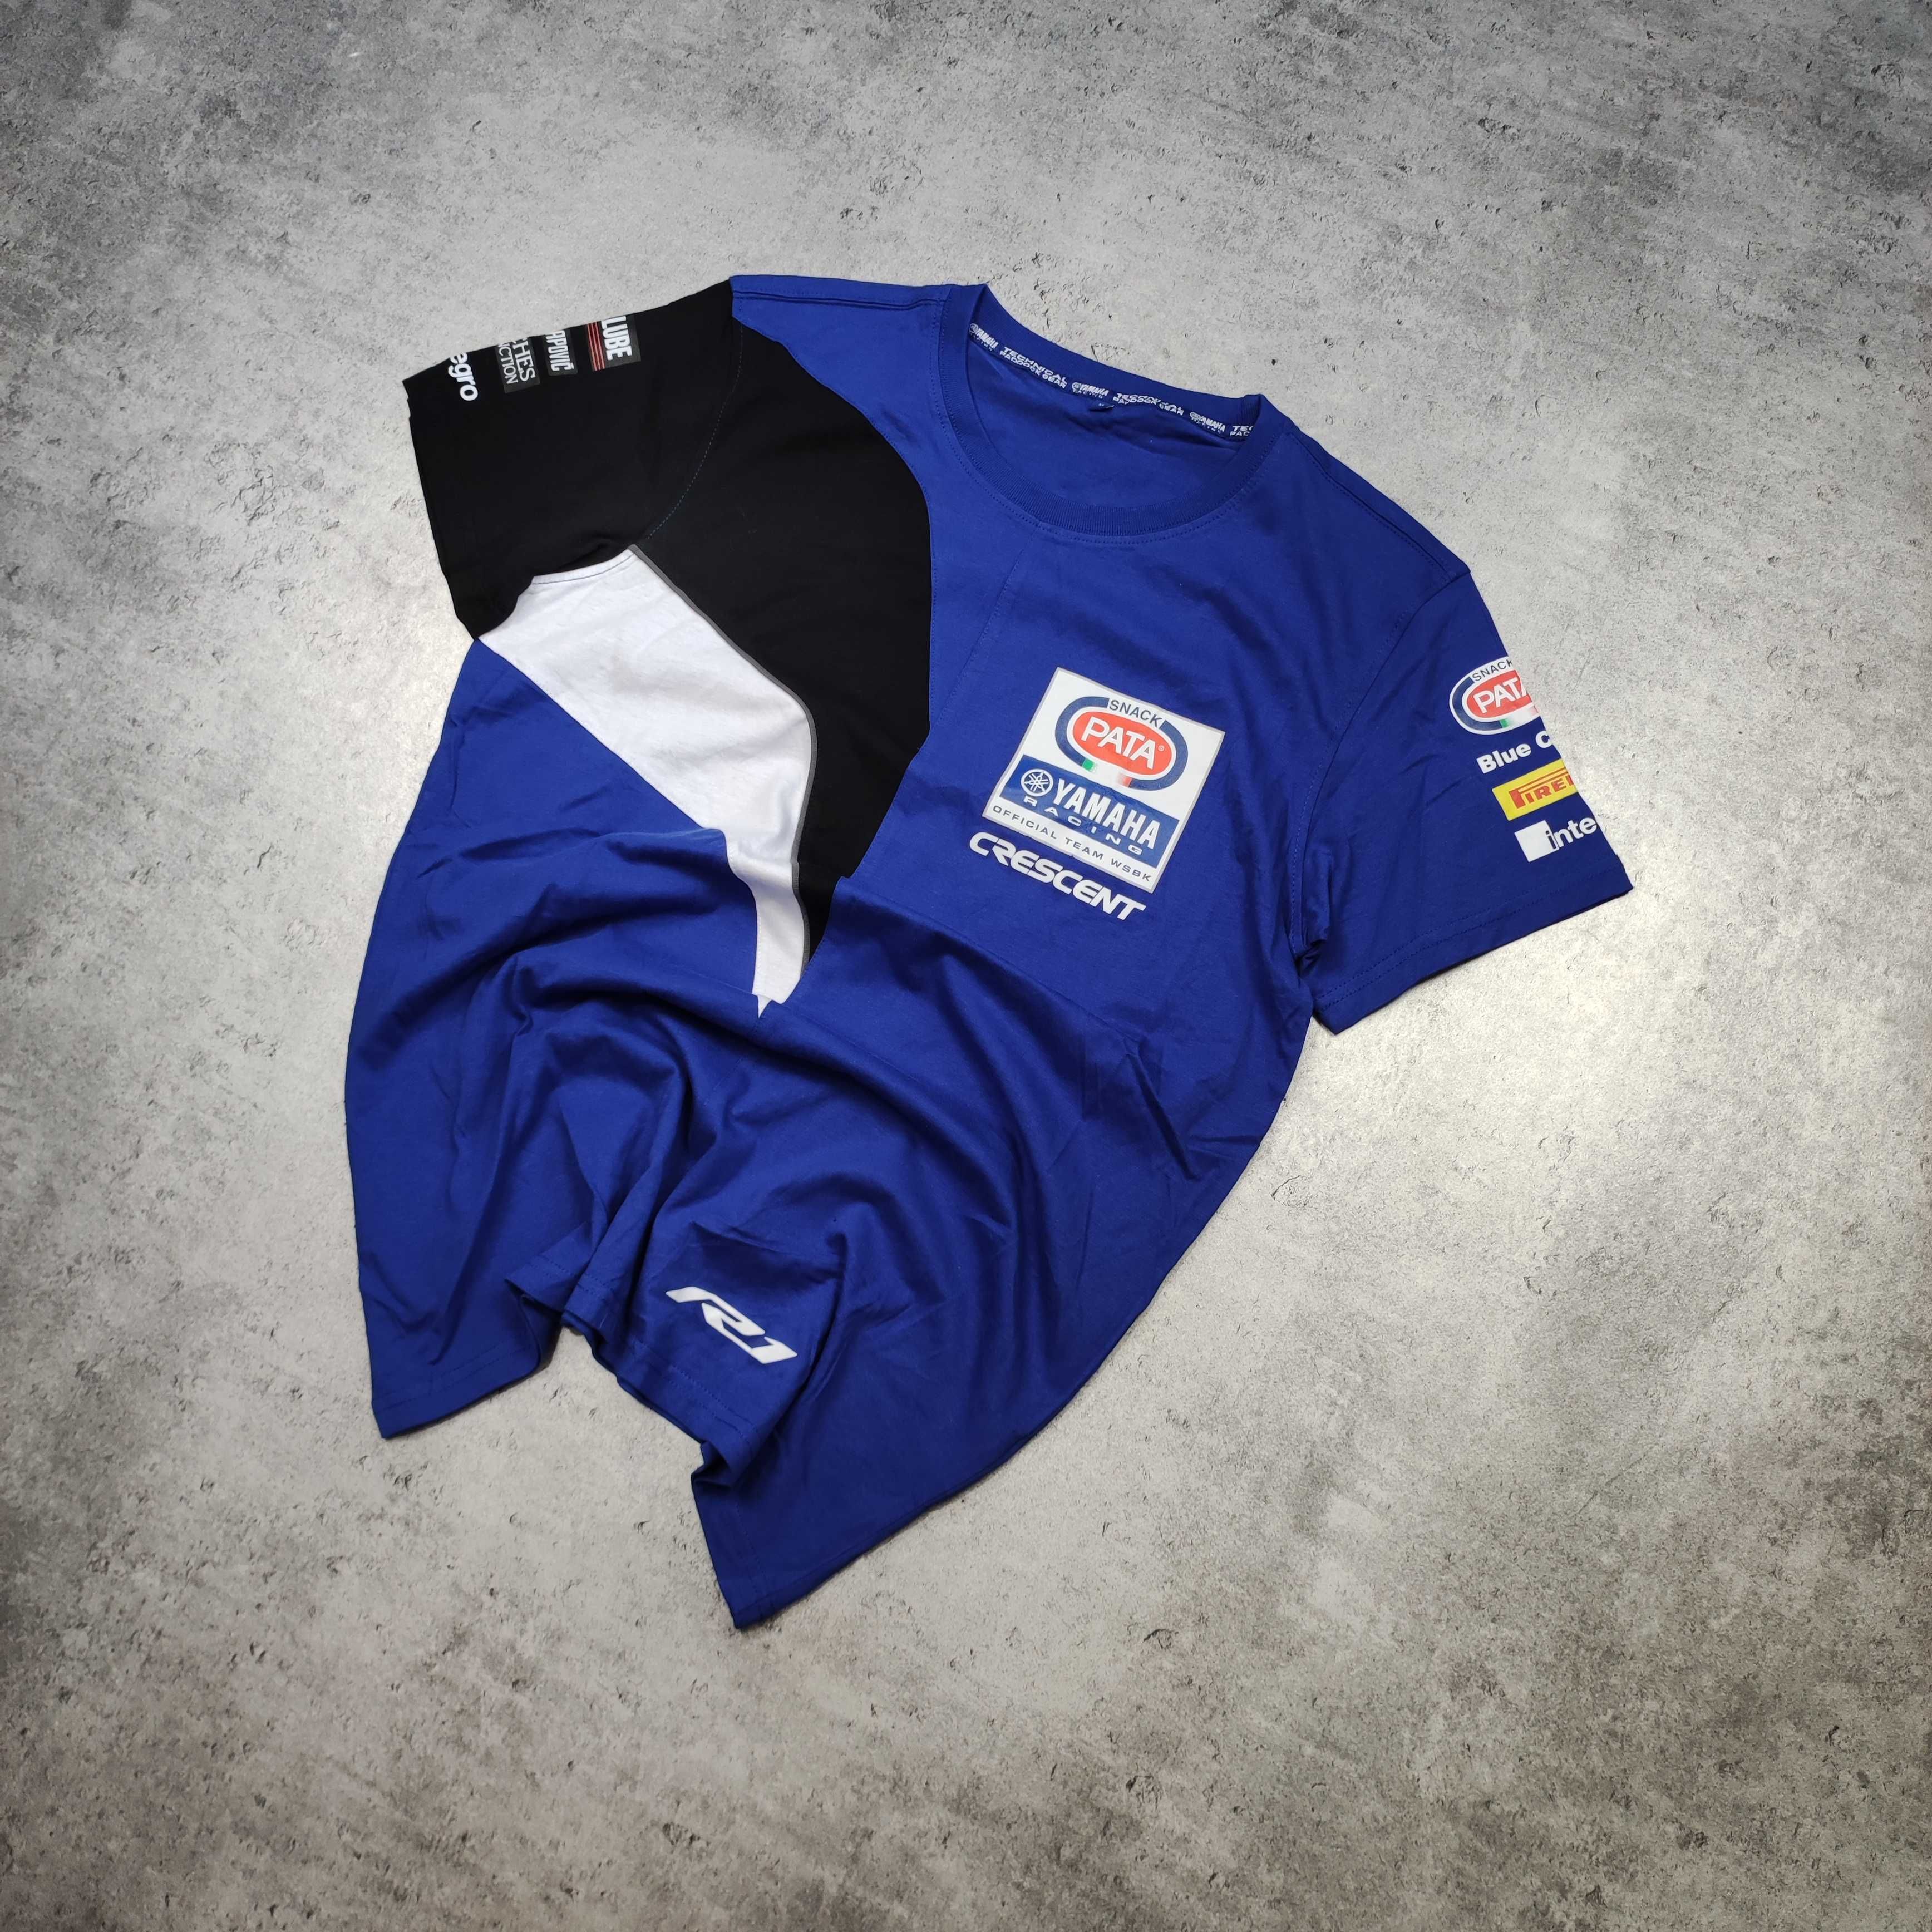 MĘSKA Koszulka Racing Sportowa Wyścigi Oficjalna Yamaha R1 Pata Snack